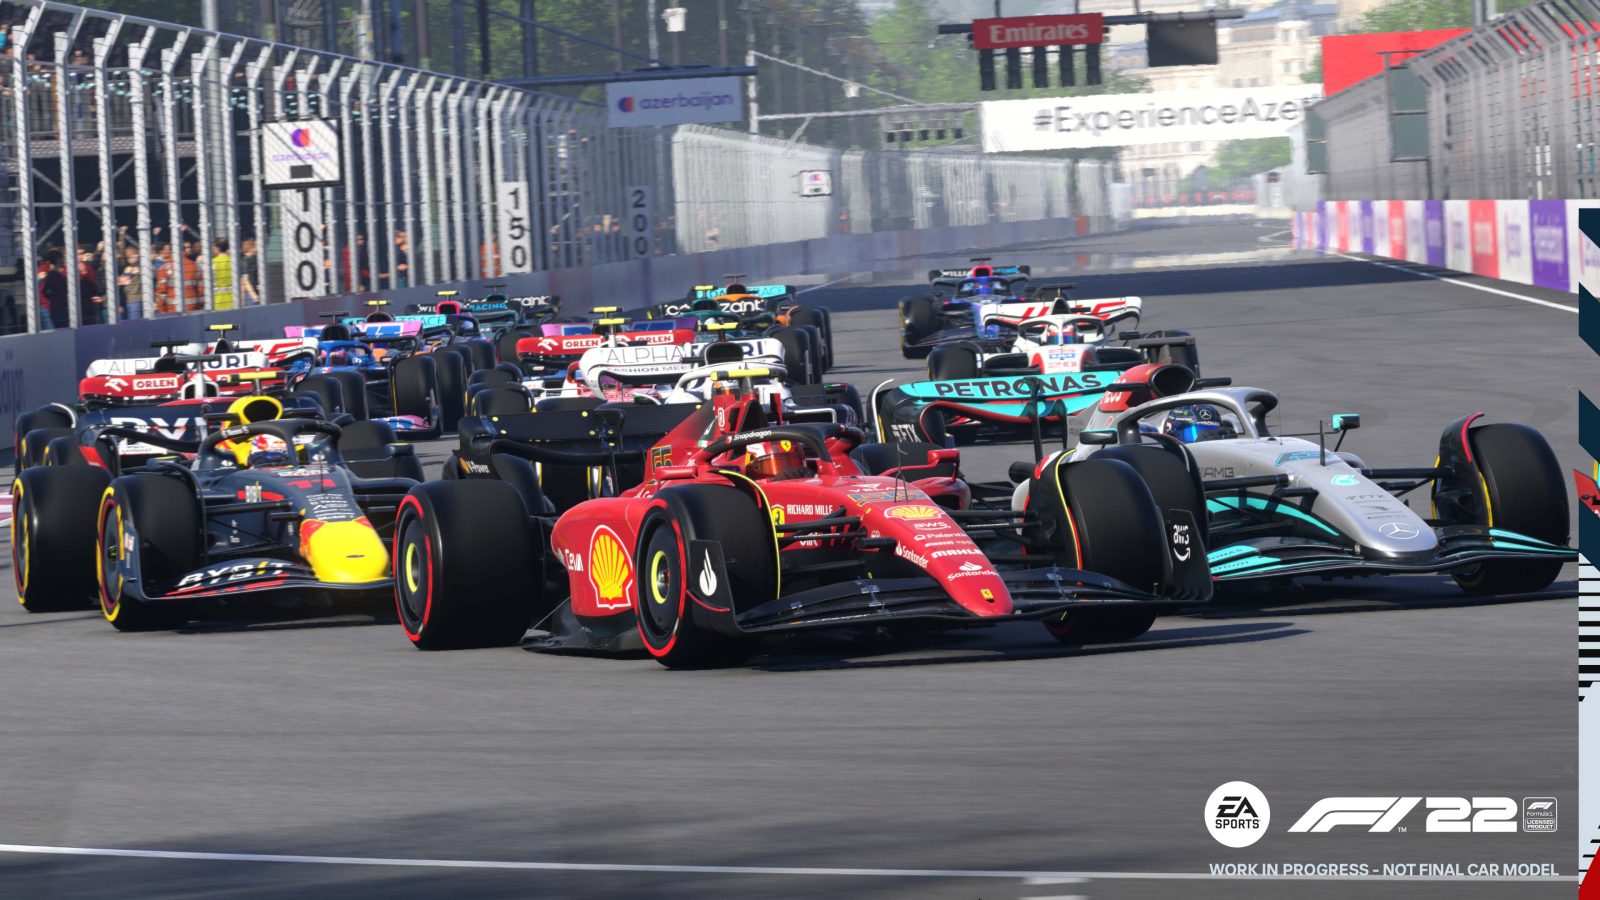 F1 22 graphic from the Azerbaijan Grand Prix